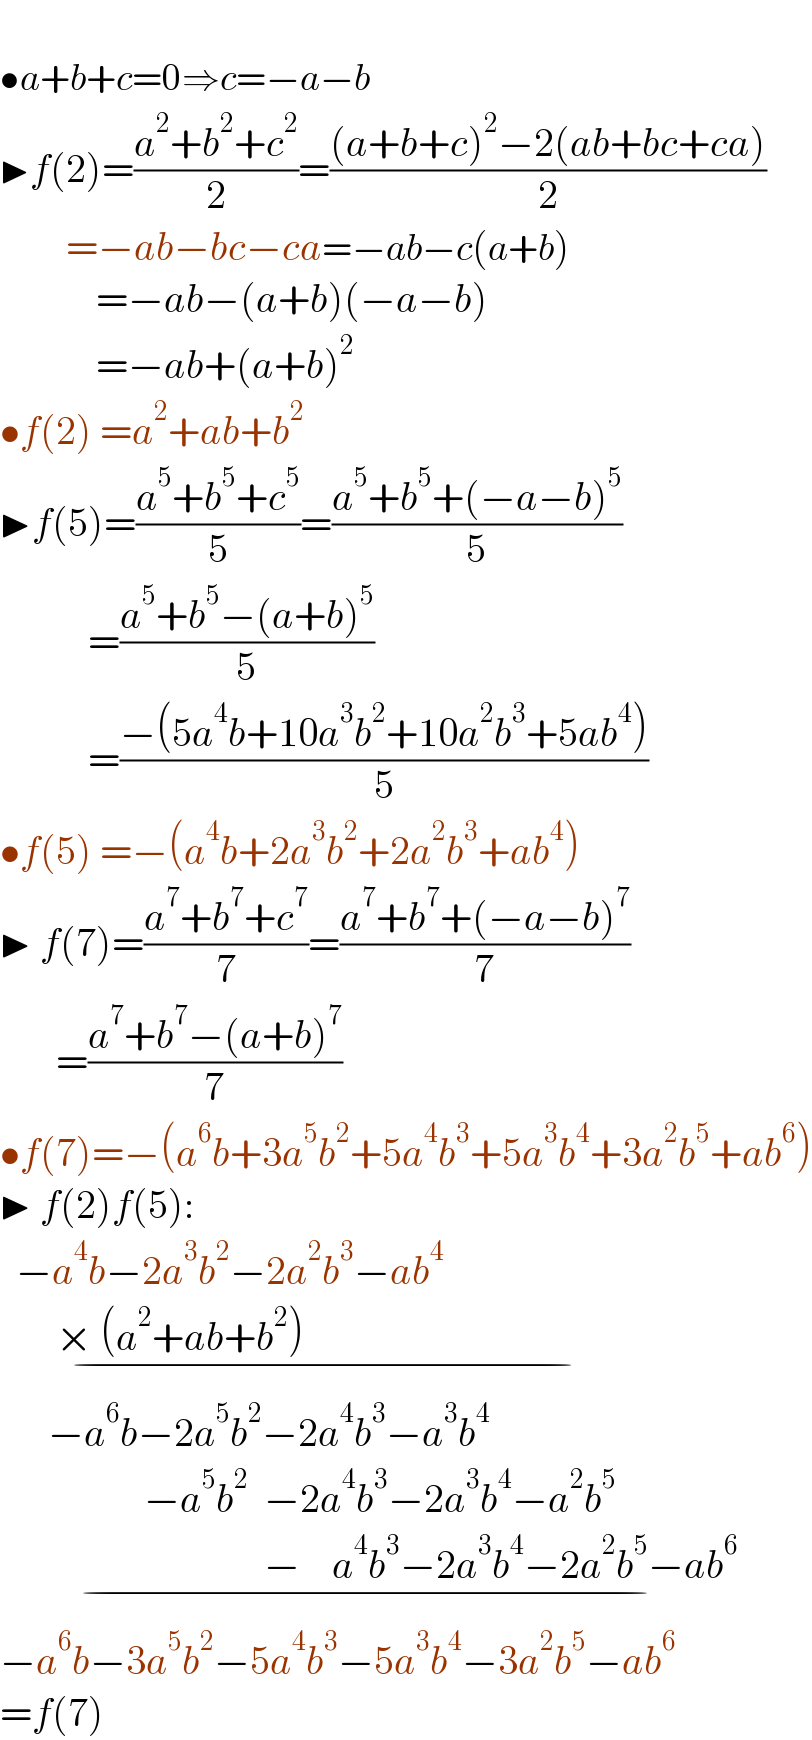   •a+b+c=0⇒c=−a−b  ▶f(2)=((a^2 +b^2 +c^2 )/2)=(((a+b+c)^2 −2(ab+bc+ca))/2)             =−ab−bc−ca=−ab−c(a+b)              =−ab−(a+b)(−a−b)              =−ab+(a+b)^2   •f(2) =a^2 +ab+b^2   ▶f(5)=((a^5 +b^5 +c^5 )/5)=((a^5 +b^5 +(−a−b)^5 )/5)             =((a^5 +b^5 −(a+b)^5 )/5)             =((−(5a^4 b+10a^3 b^2 +10a^2 b^3 +5ab^4 ))/5)  •f(5) =−(a^4 b+2a^3 b^2 +2a^2 b^3 +ab^4 )  ▶ f(7)=((a^7 +b^7 +c^7 )/7)=((a^7 +b^7 +(−a−b)^7 )/7)         =((a^7 +b^7 −(a+b)^7 )/7)  •f(7)=−(a^6 b+3a^5 b^2 +5a^4 b^3 +5a^3 b^4 +3a^2 b^5 +ab^6 )  ▶ f(2)f(5):    −a^4 b−2a^3 b^2 −2a^2 b^3 −ab^4             × (a^2 +ab+b^2 )                                              _(−)         −a^6 b−2a^5 b^2 −2a^4 b^3 −a^3 b^4                     −a^5 b^2   −2a^4 b^3 −2a^3 b^4 −a^2 b^5                                    −    a^4 b^3 −2a^3 b^4 −2a^2 b^5 −ab^6    _(−)   −a^6 b−3a^5 b^2 −5a^4 b^3 −5a^3 b^4 −3a^2 b^5 −ab^6   =f(7)  